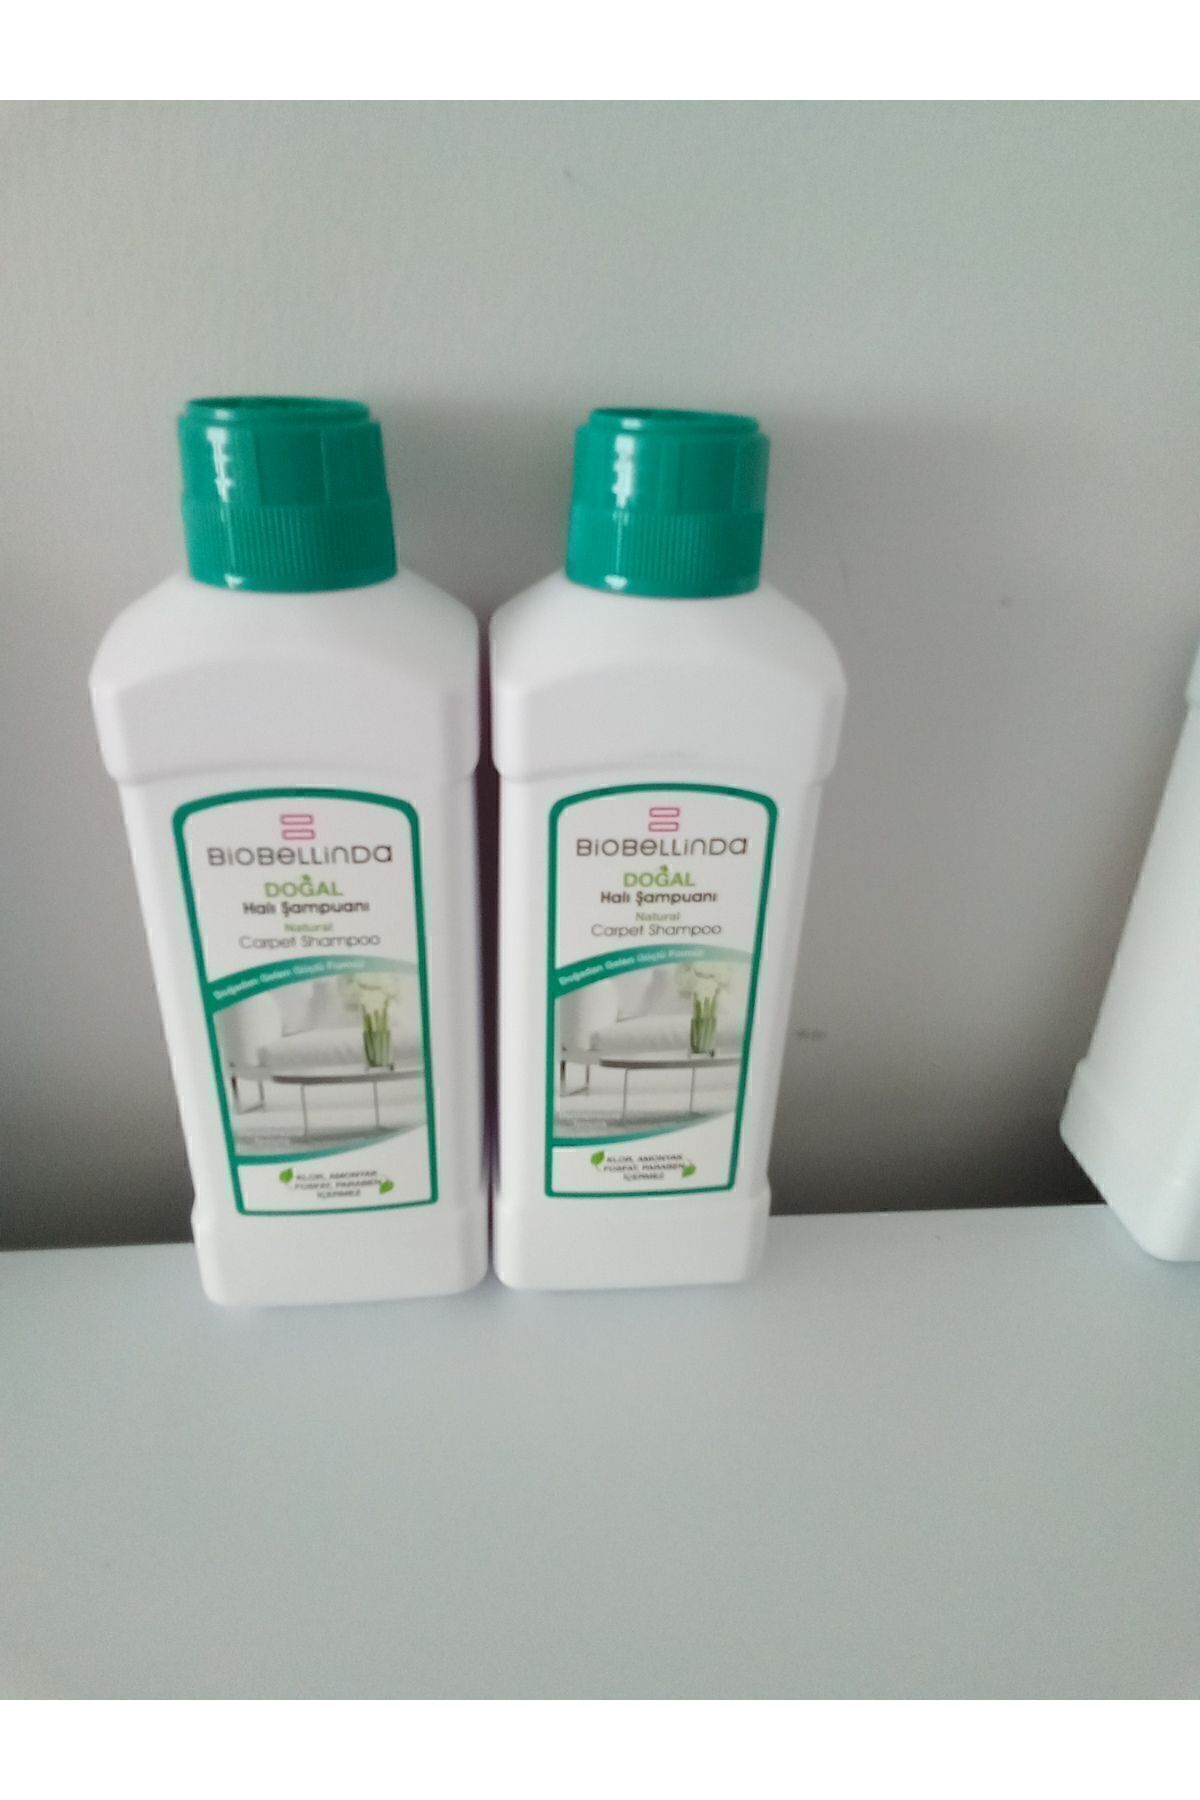 bıobelinda Biobelinda hali şampuanı 2 adet